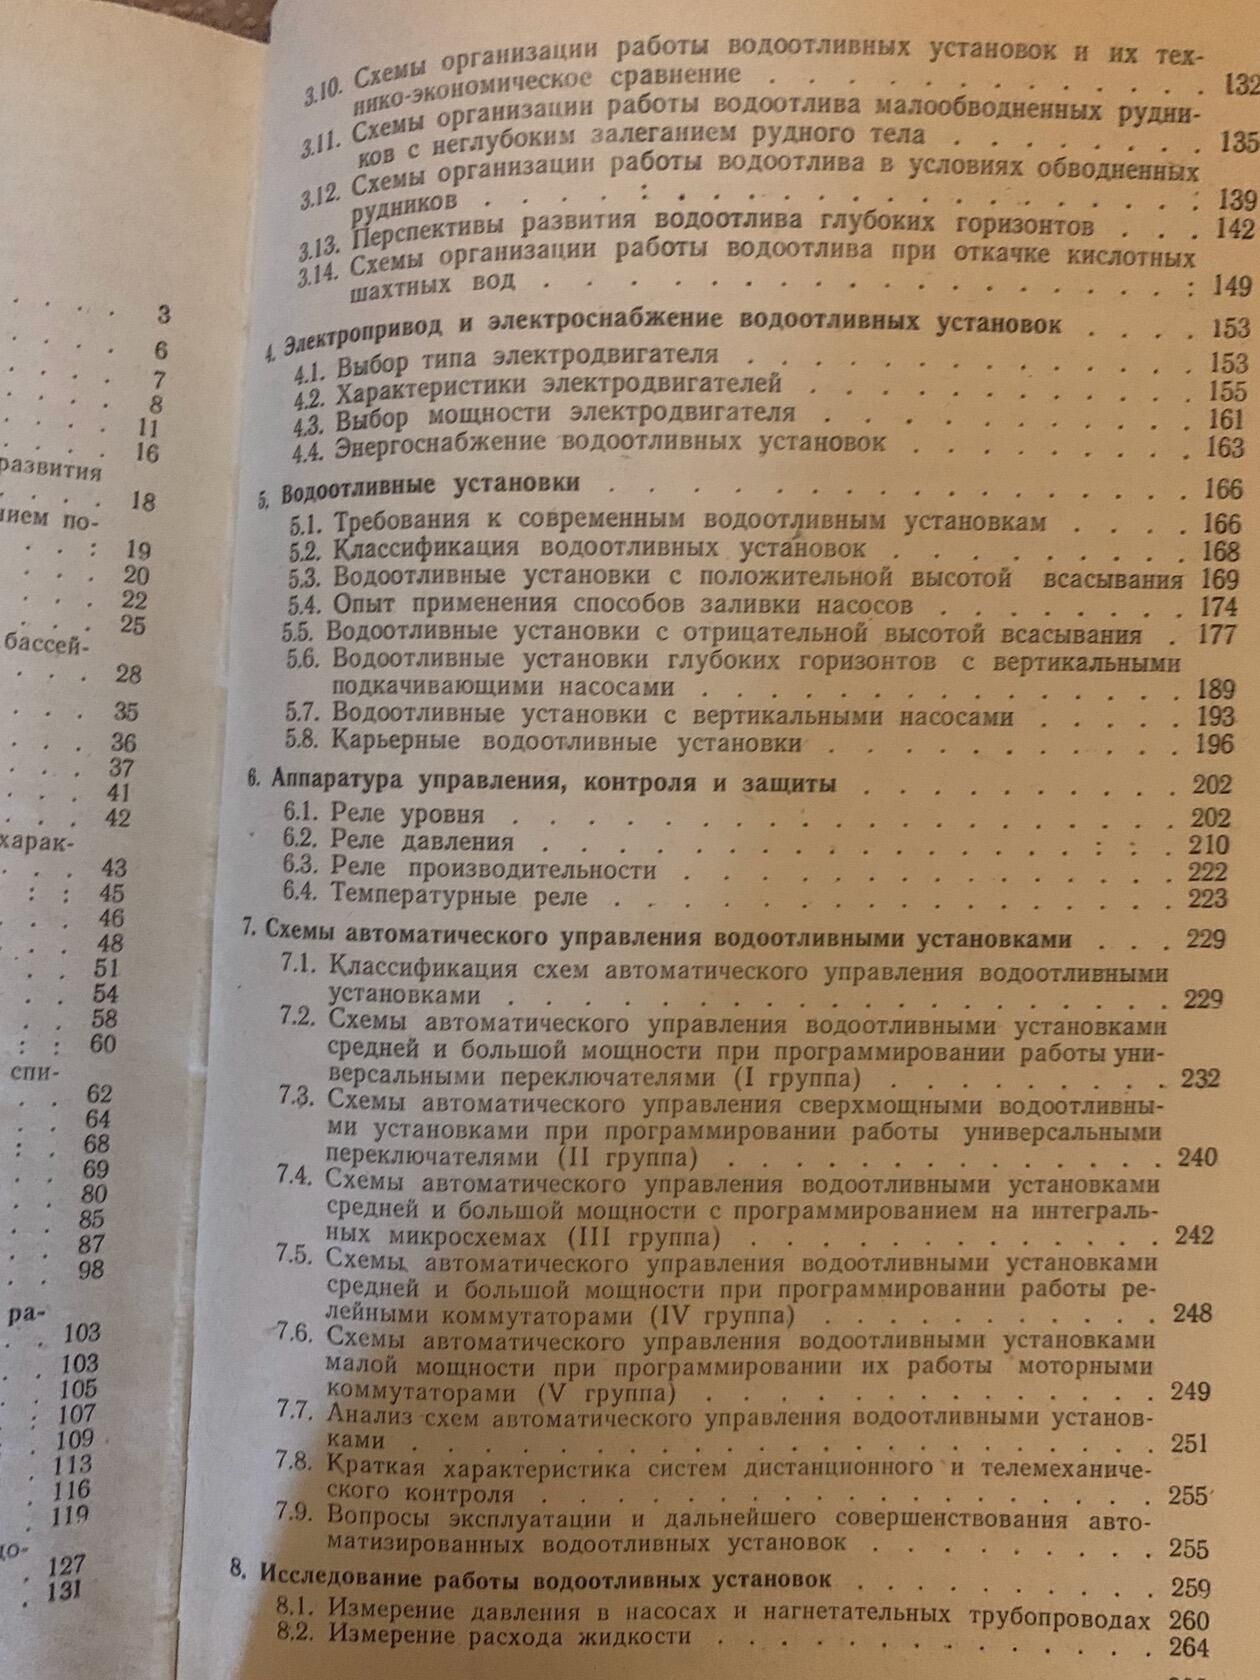 Рудничные водоотливные установки(Книга СССР)